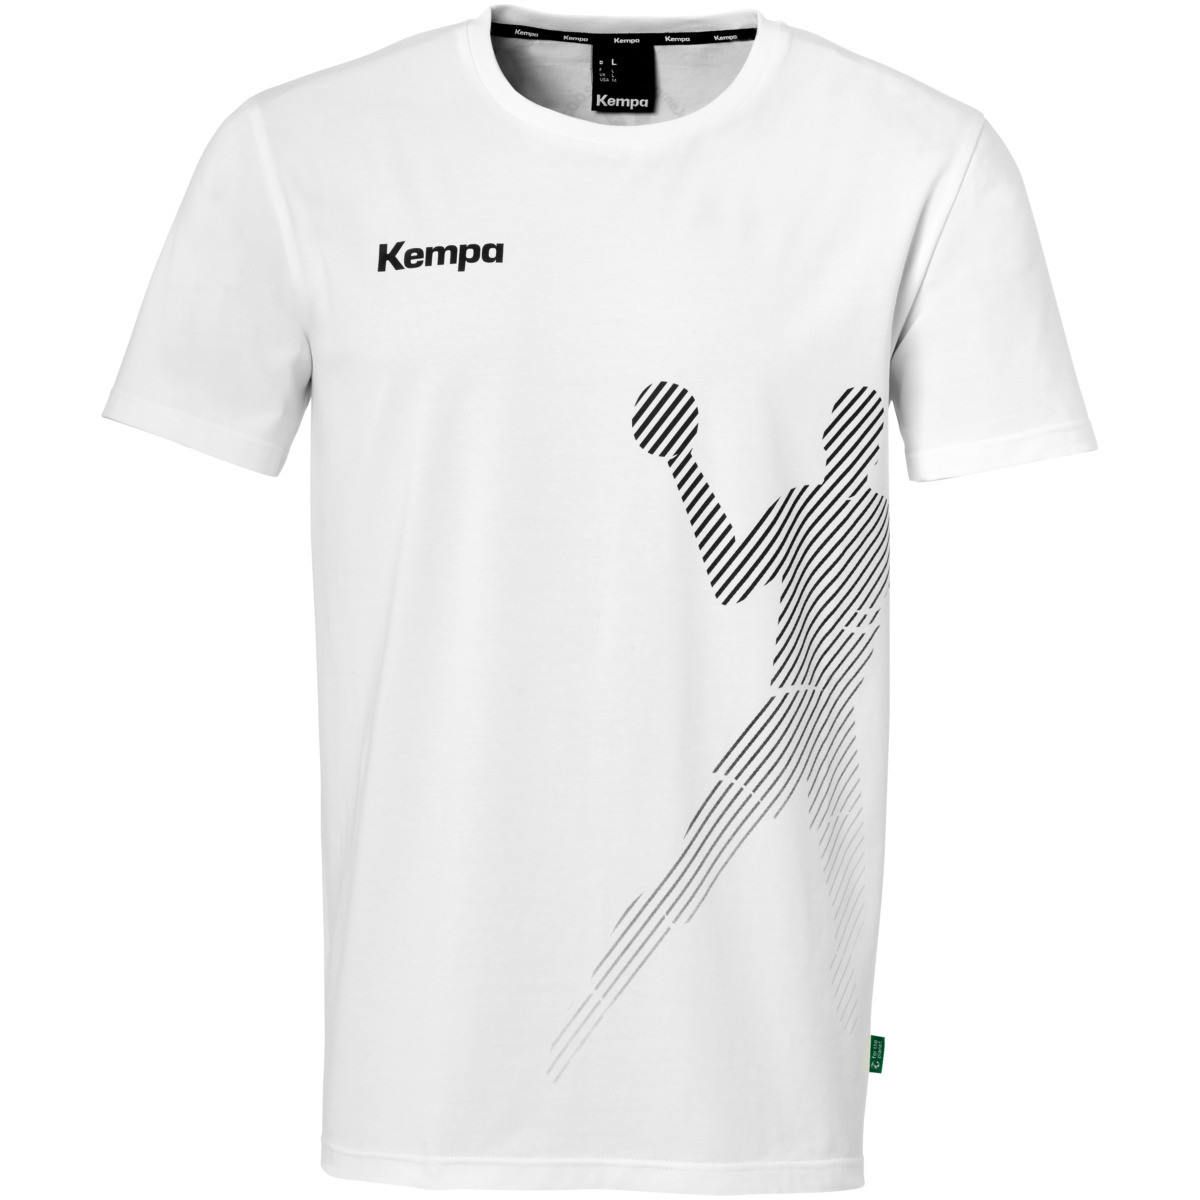 Kempa Black & White T-Shirt